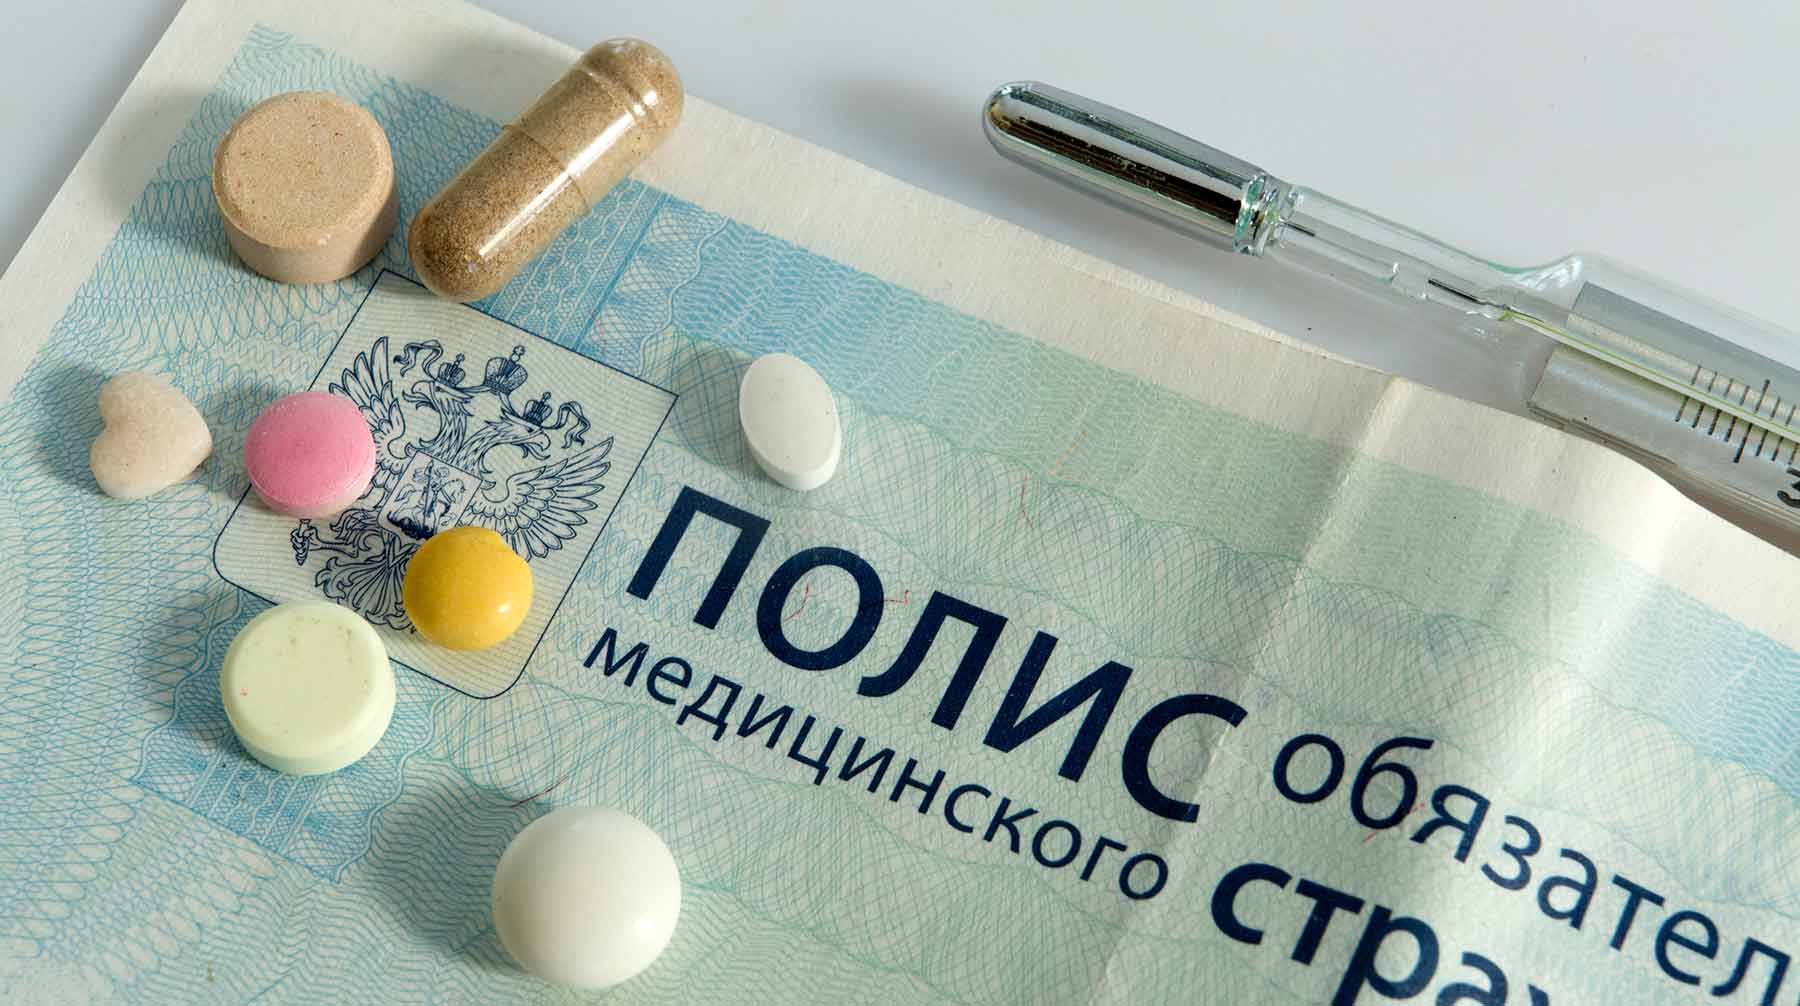 Эти препараты относятся к числу жизненно необходимых препаратов Фото: © Global Look Press